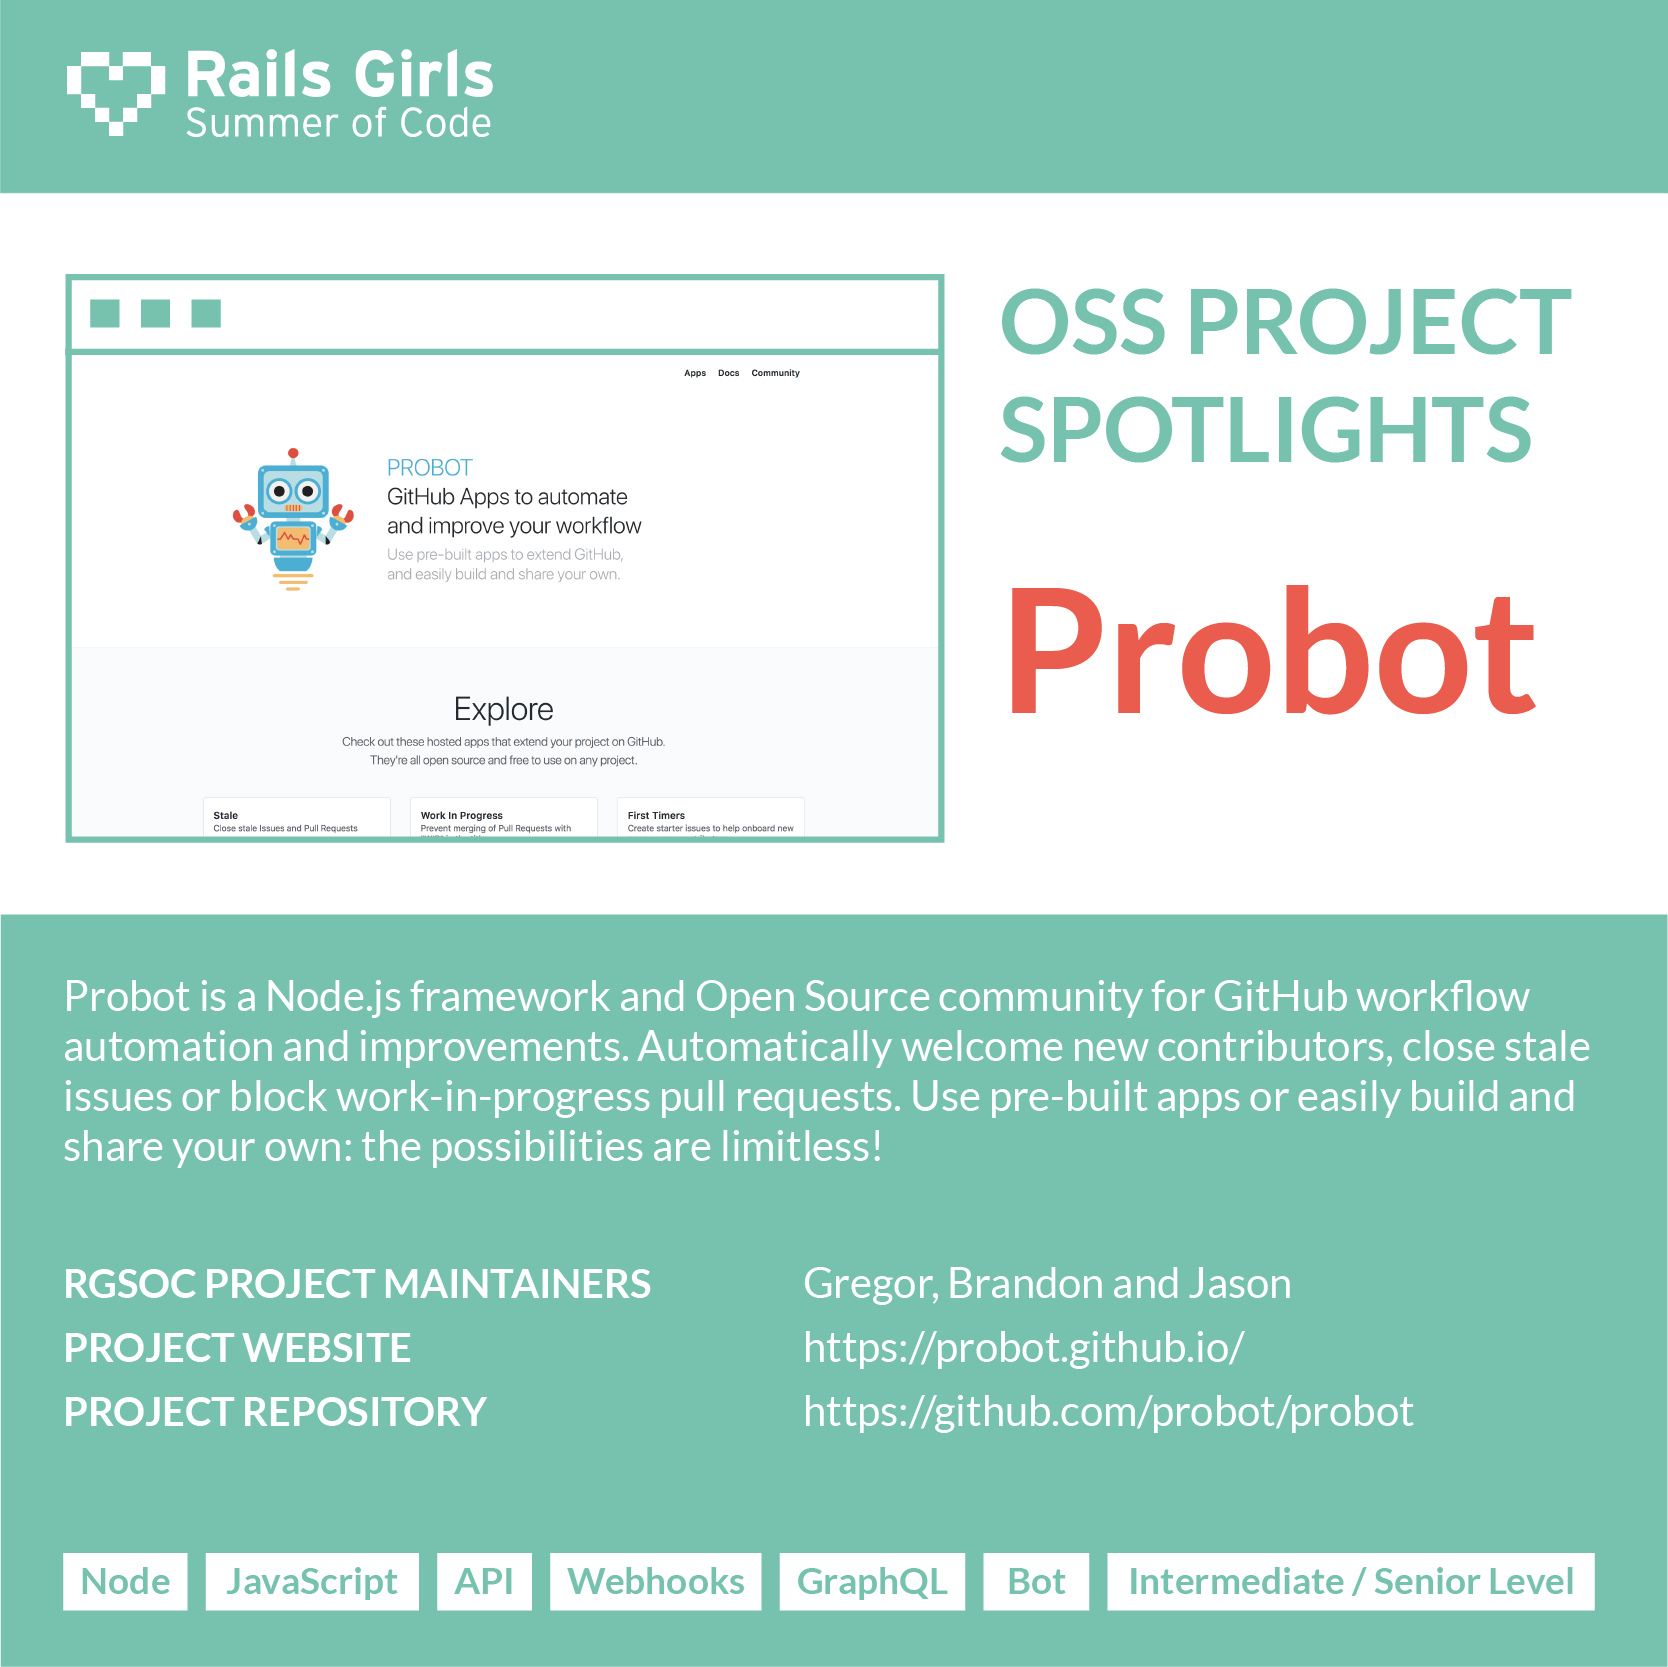 OSS Project Spotlight: Probot